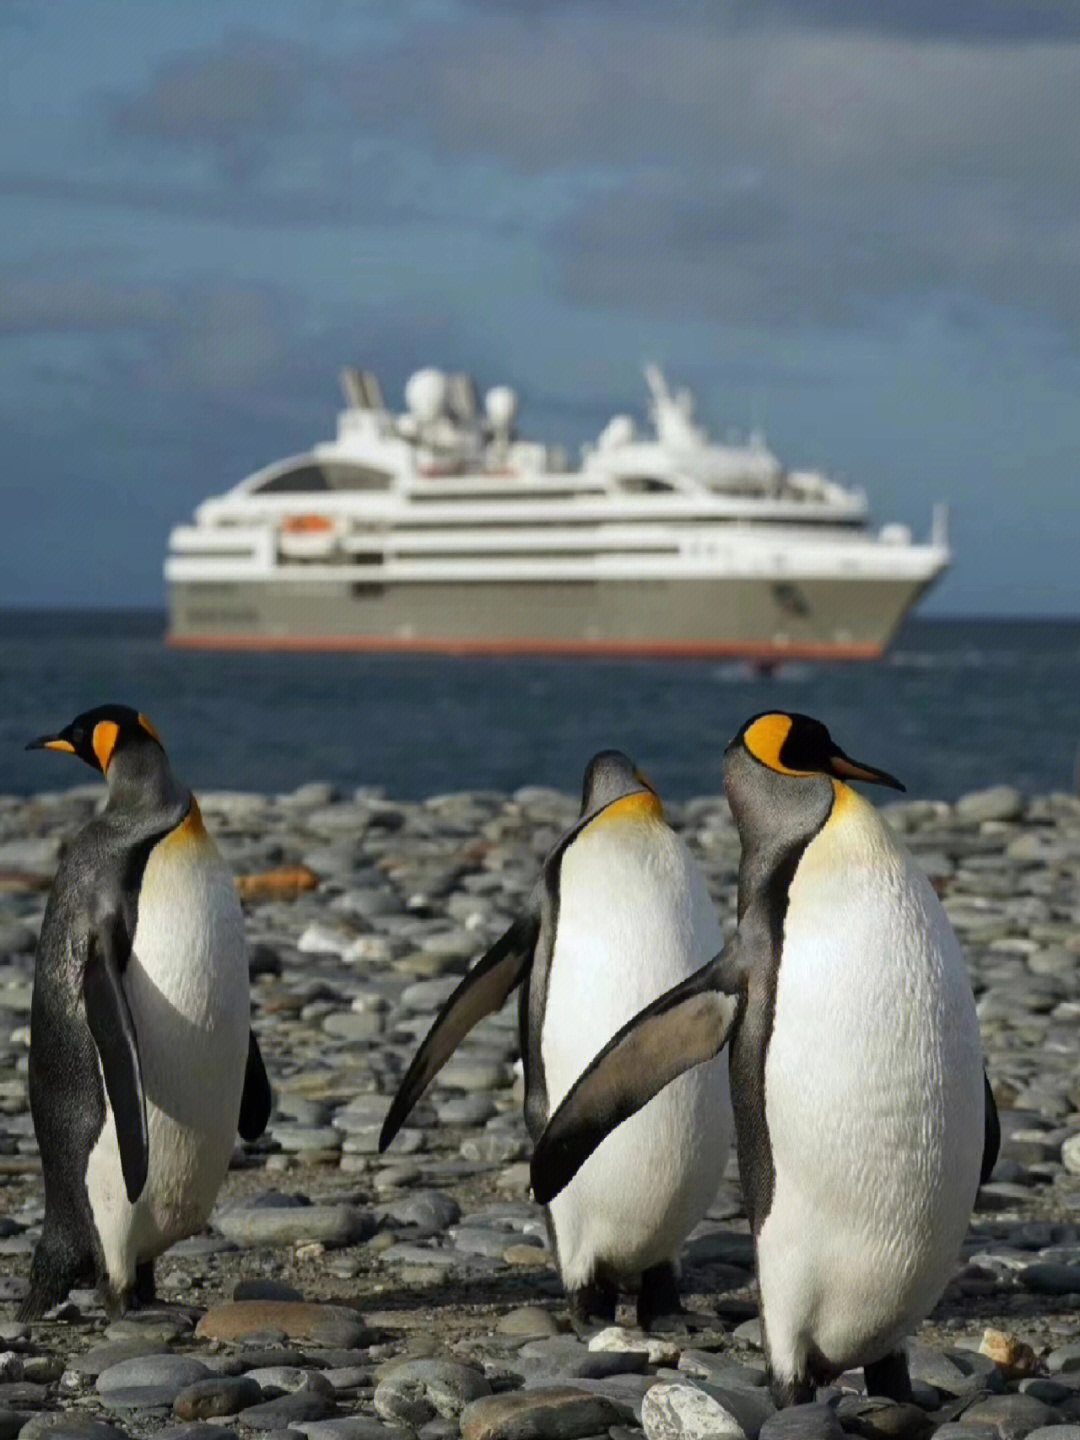 抵达南极,在南乔治亚岛发现新的灵感,整座南乔治亚超过50万只王企鹅就